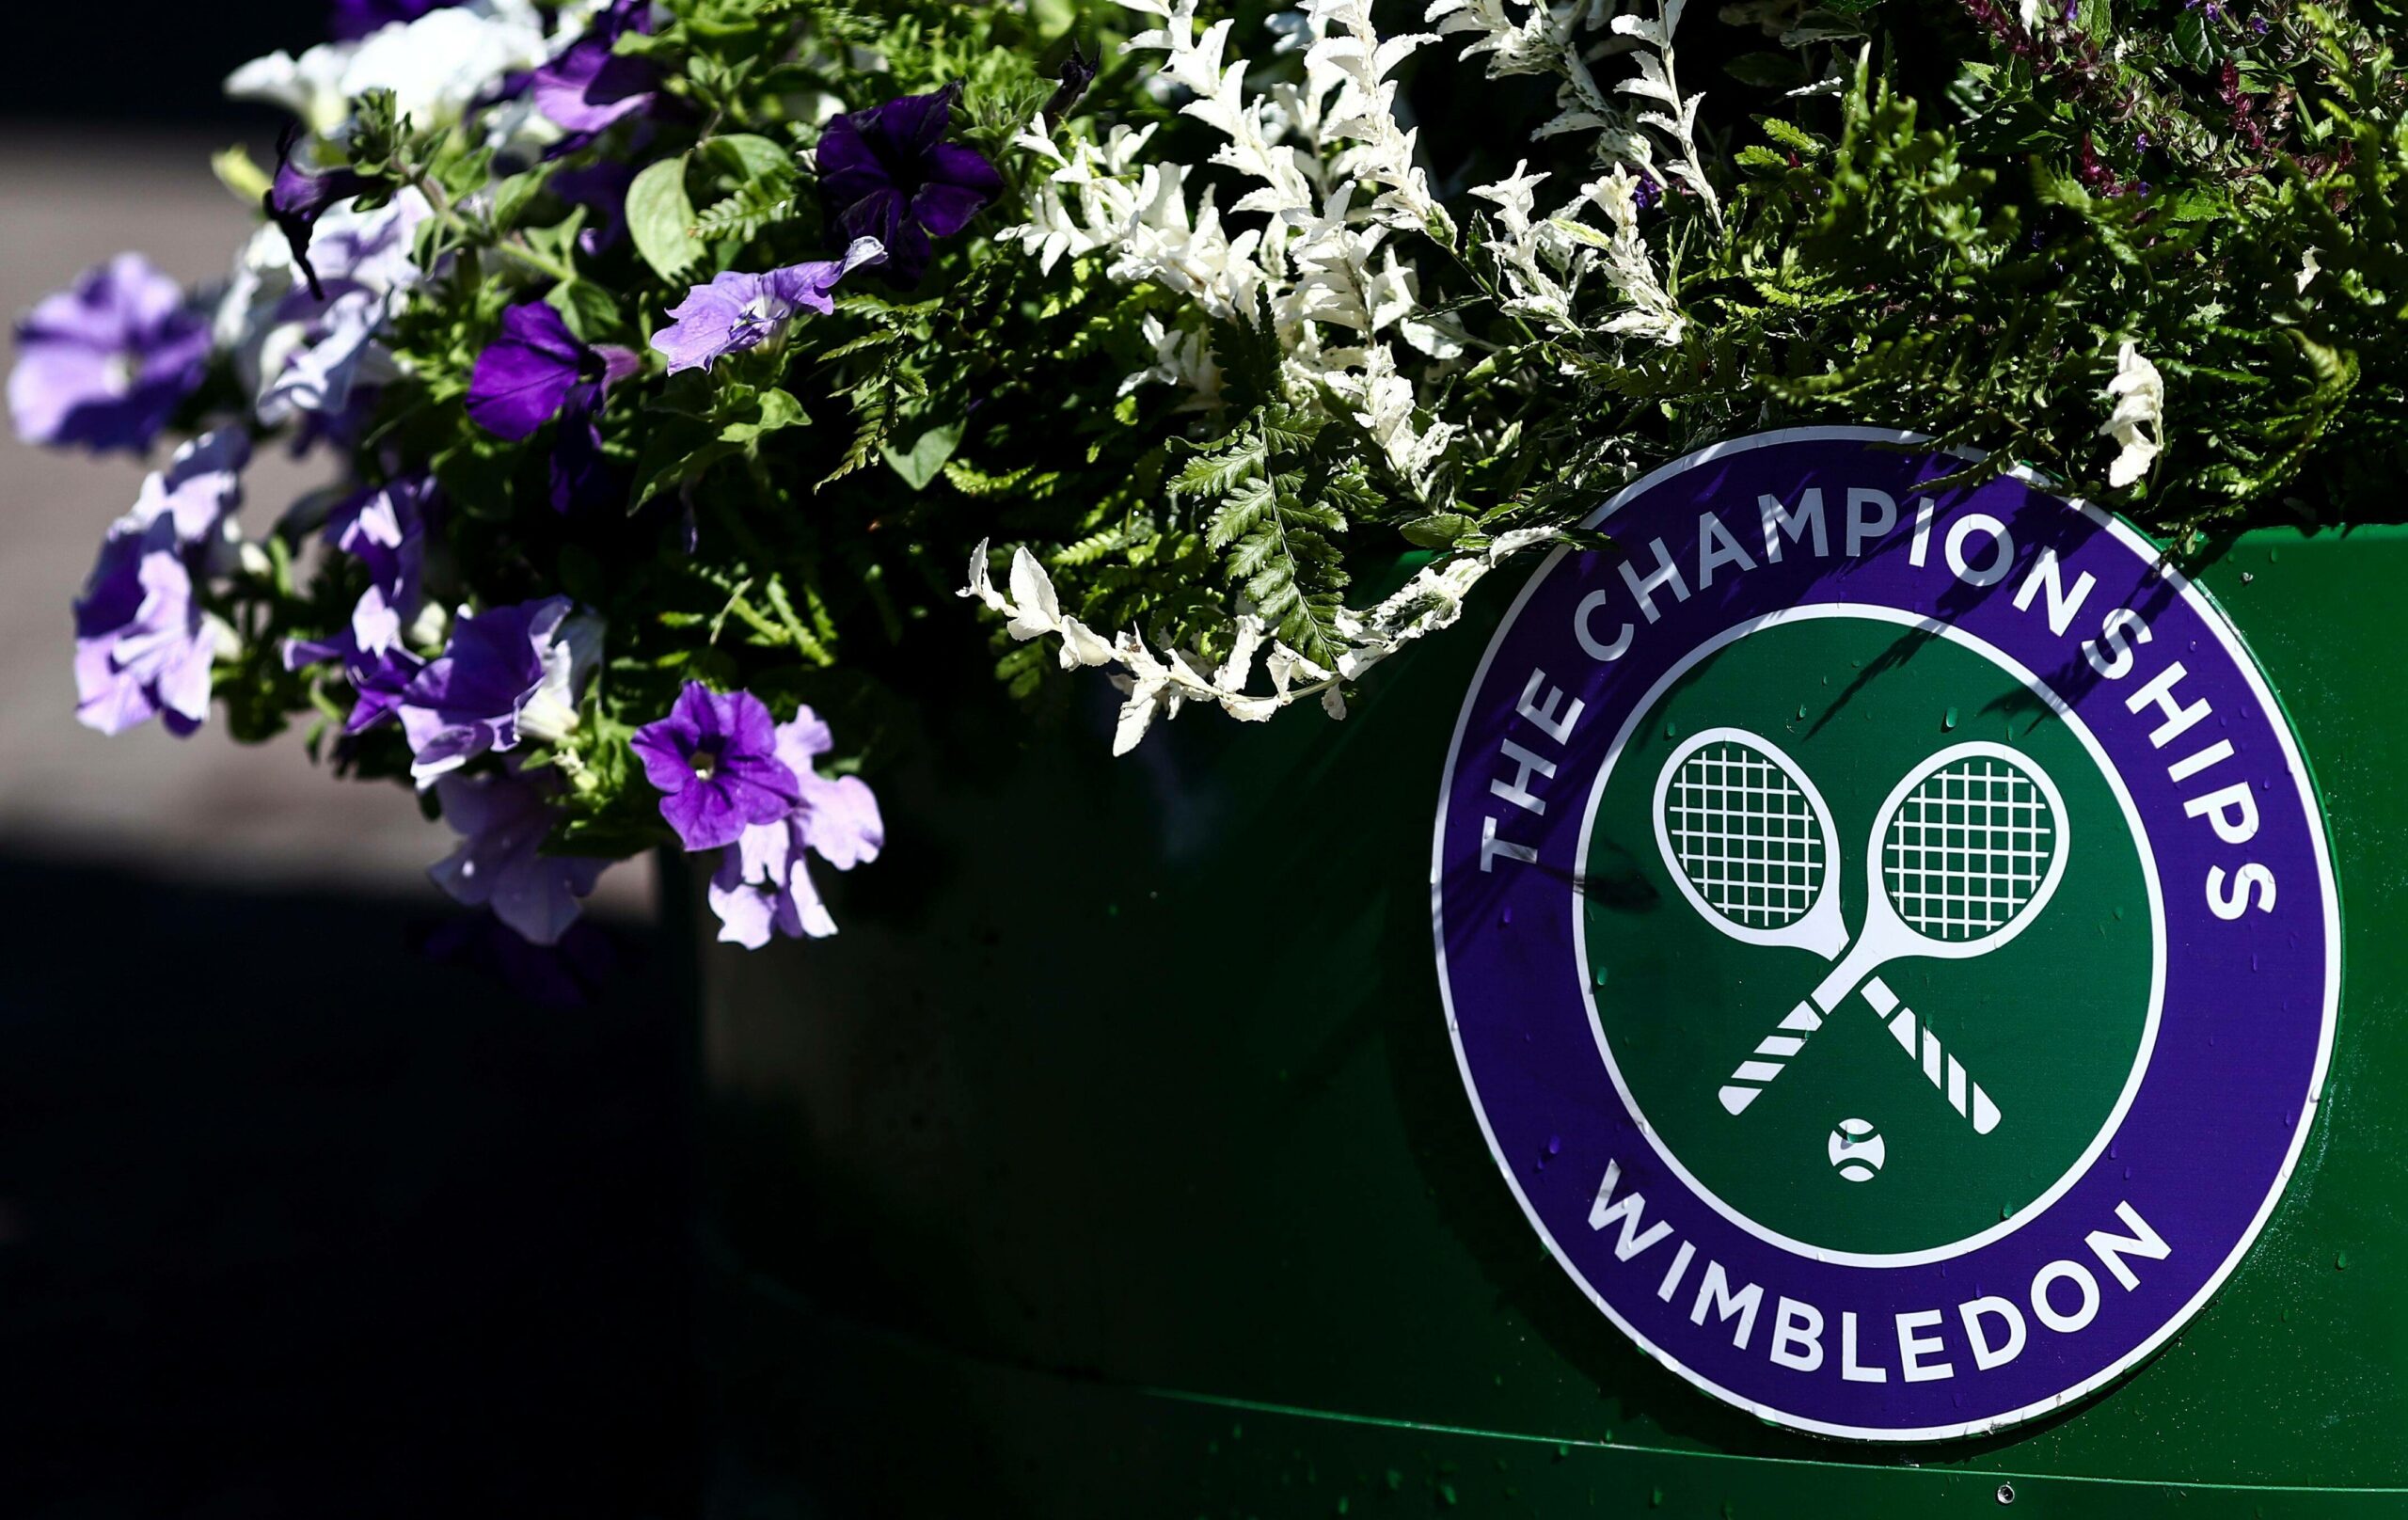 Die Wimbledon-Veranstalter gehen gegen eine Geldstrafe durch die Damen-Profiorganisation WTA